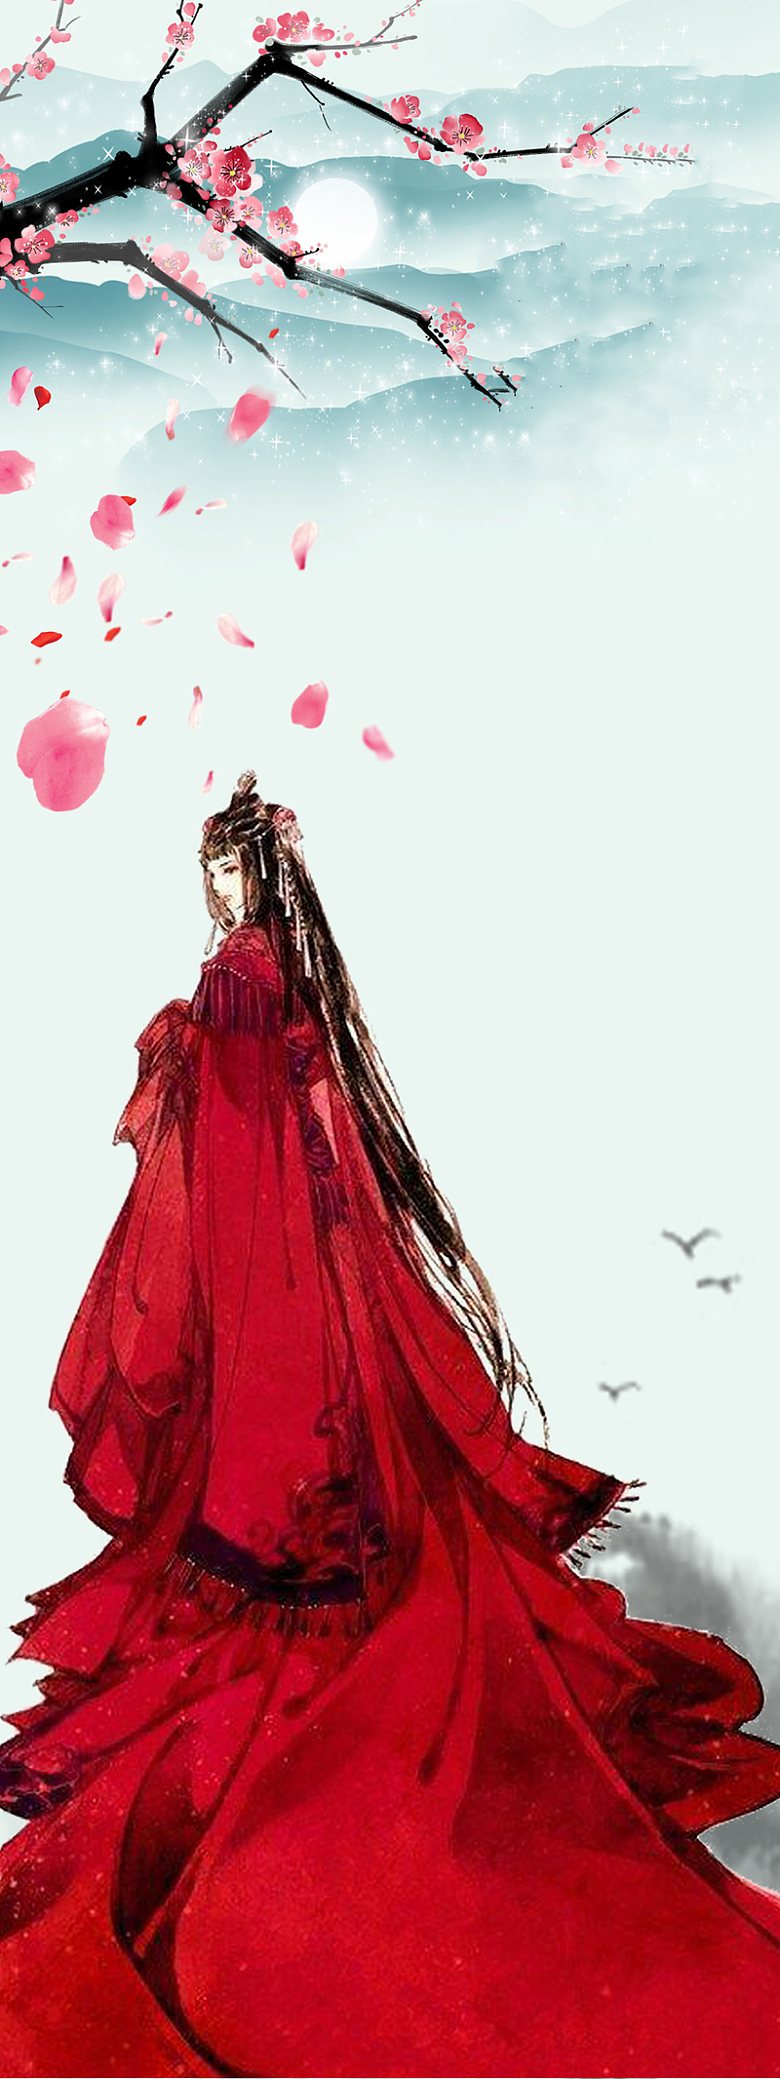 红衣女子中国古风背景素材